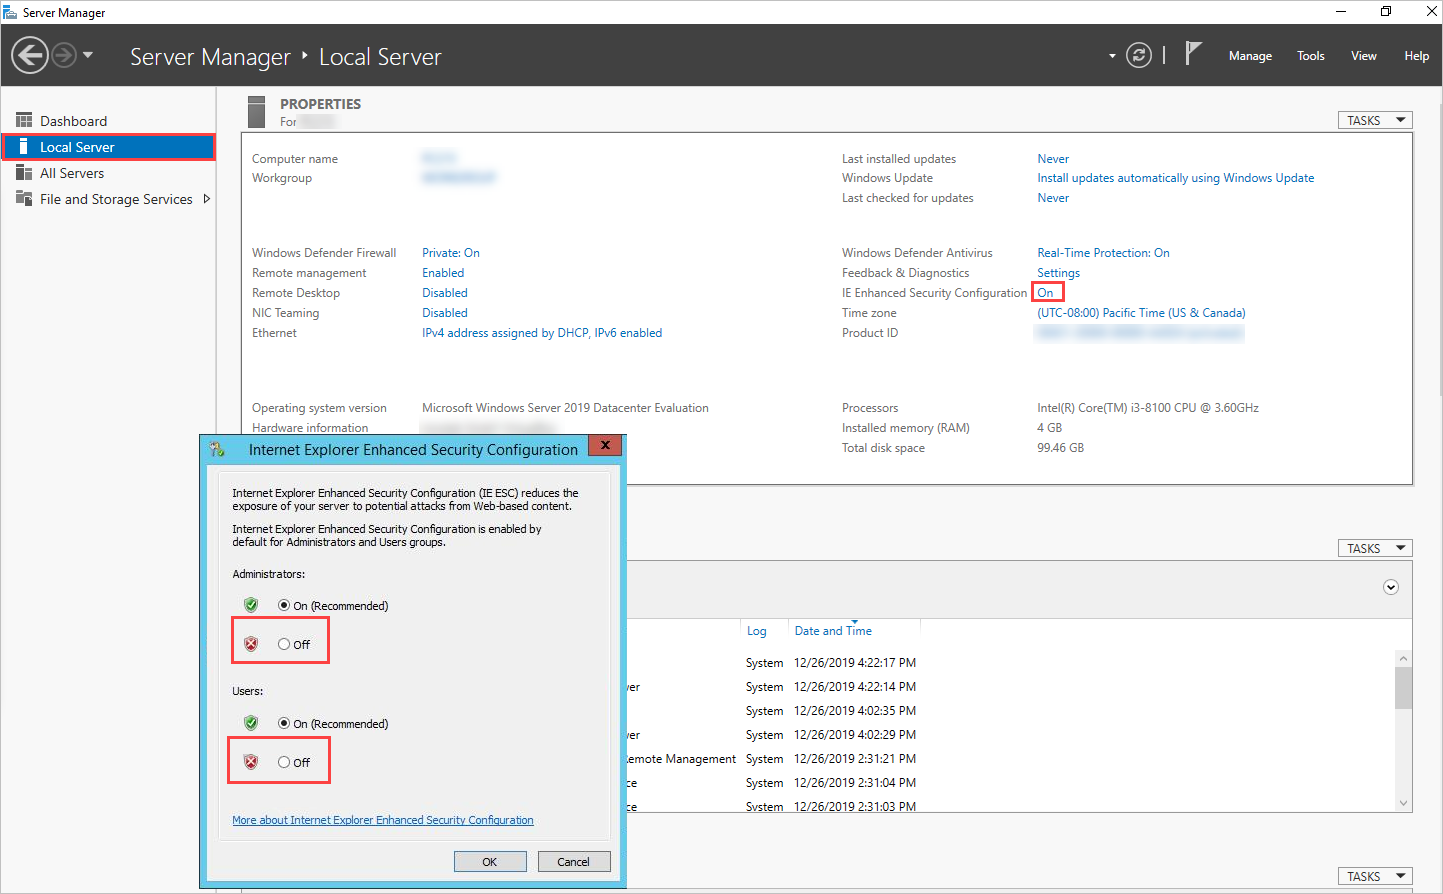 Captura de tela do recurso IEESC nas configurações do servidor local Internet Explorer.